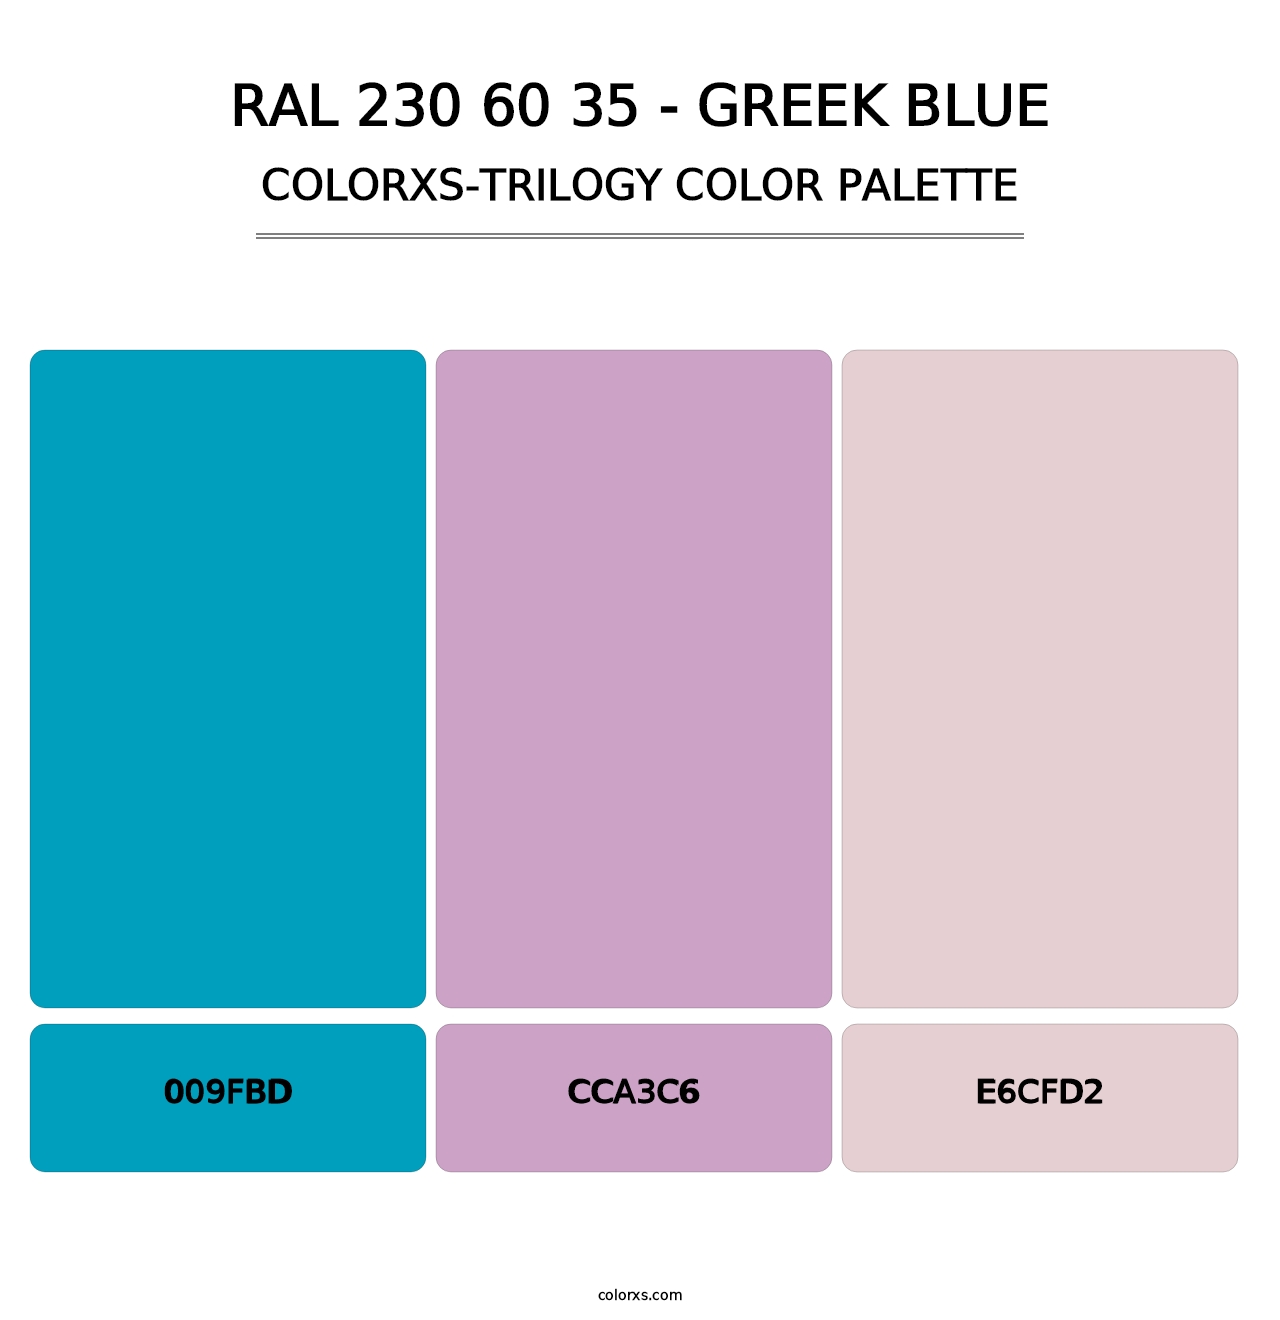 RAL 230 60 35 - Greek Blue - Colorxs Trilogy Palette